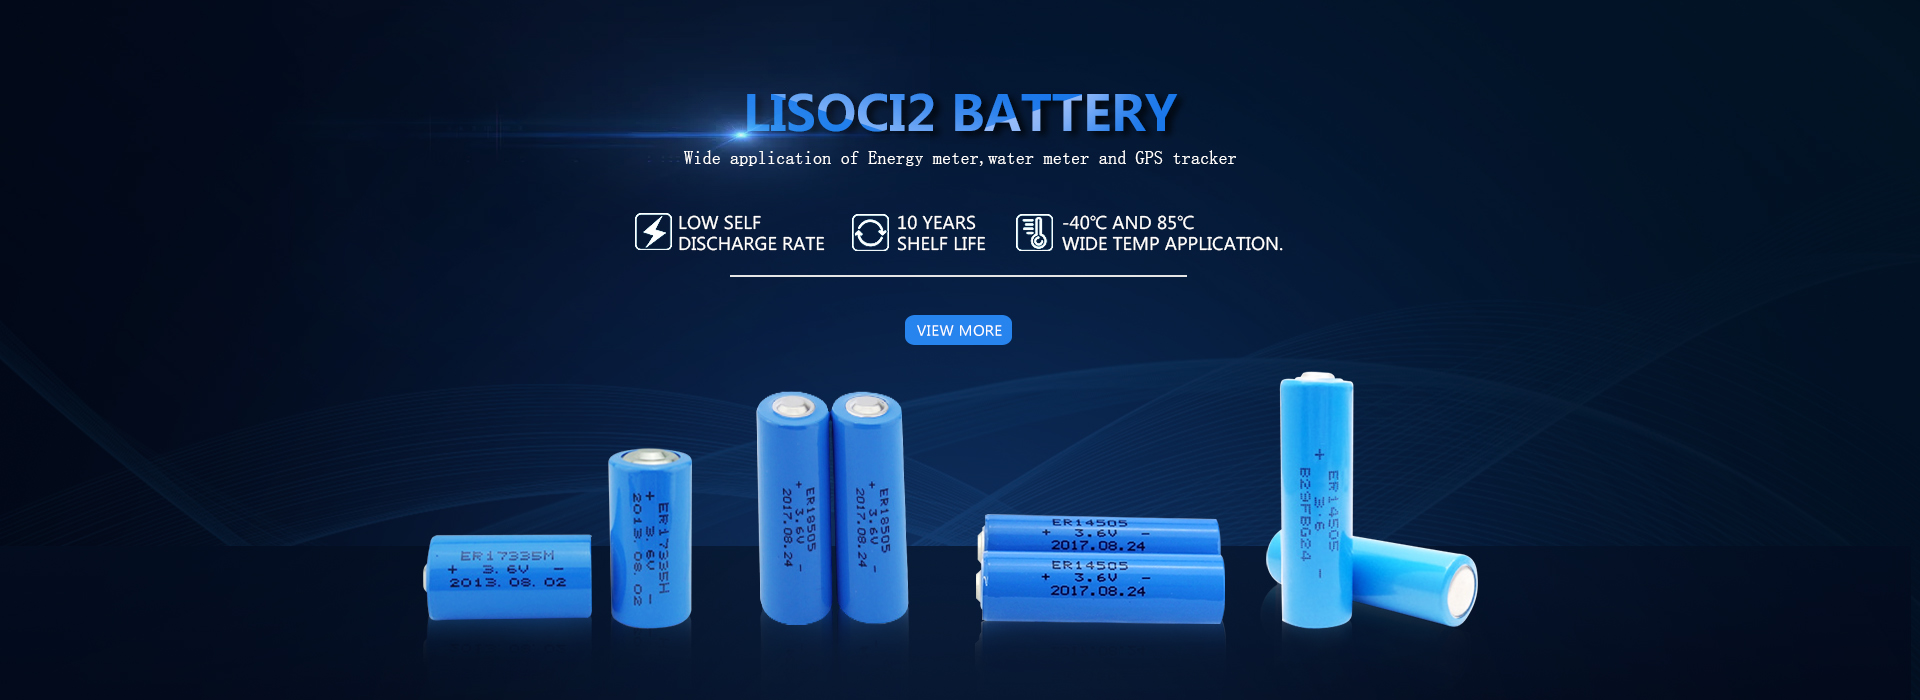 LiSoci2 ထုတ်လုပ်သူများ